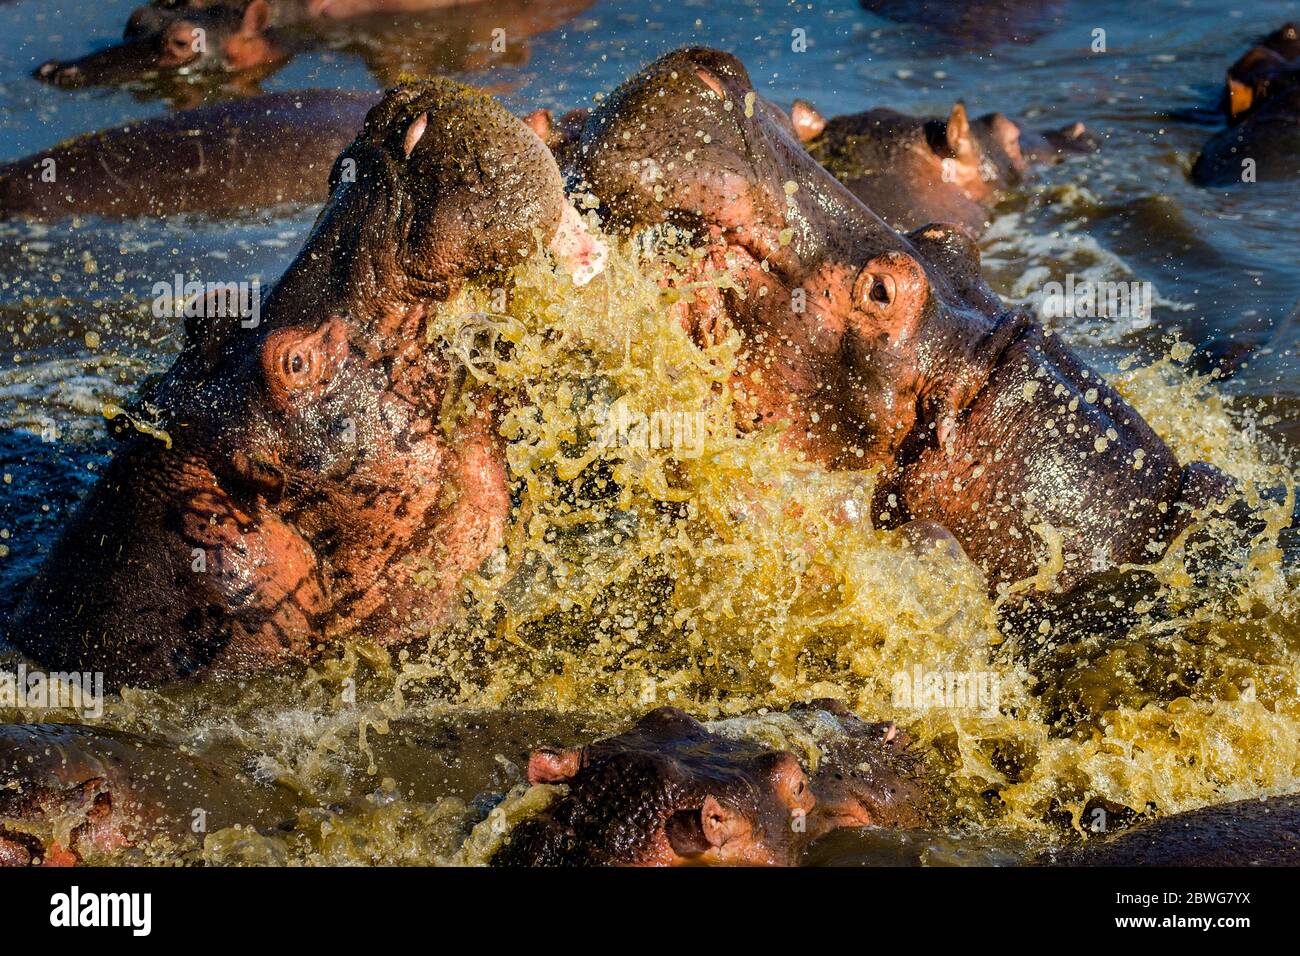 Nahaufnahme von gewöhnlicher Nilpferd (Hippopotamus amphibius), die in aufgeschäumten Gewässern tummelten, Serengeti Nationalpark, Tansania, Afrika Stockfoto